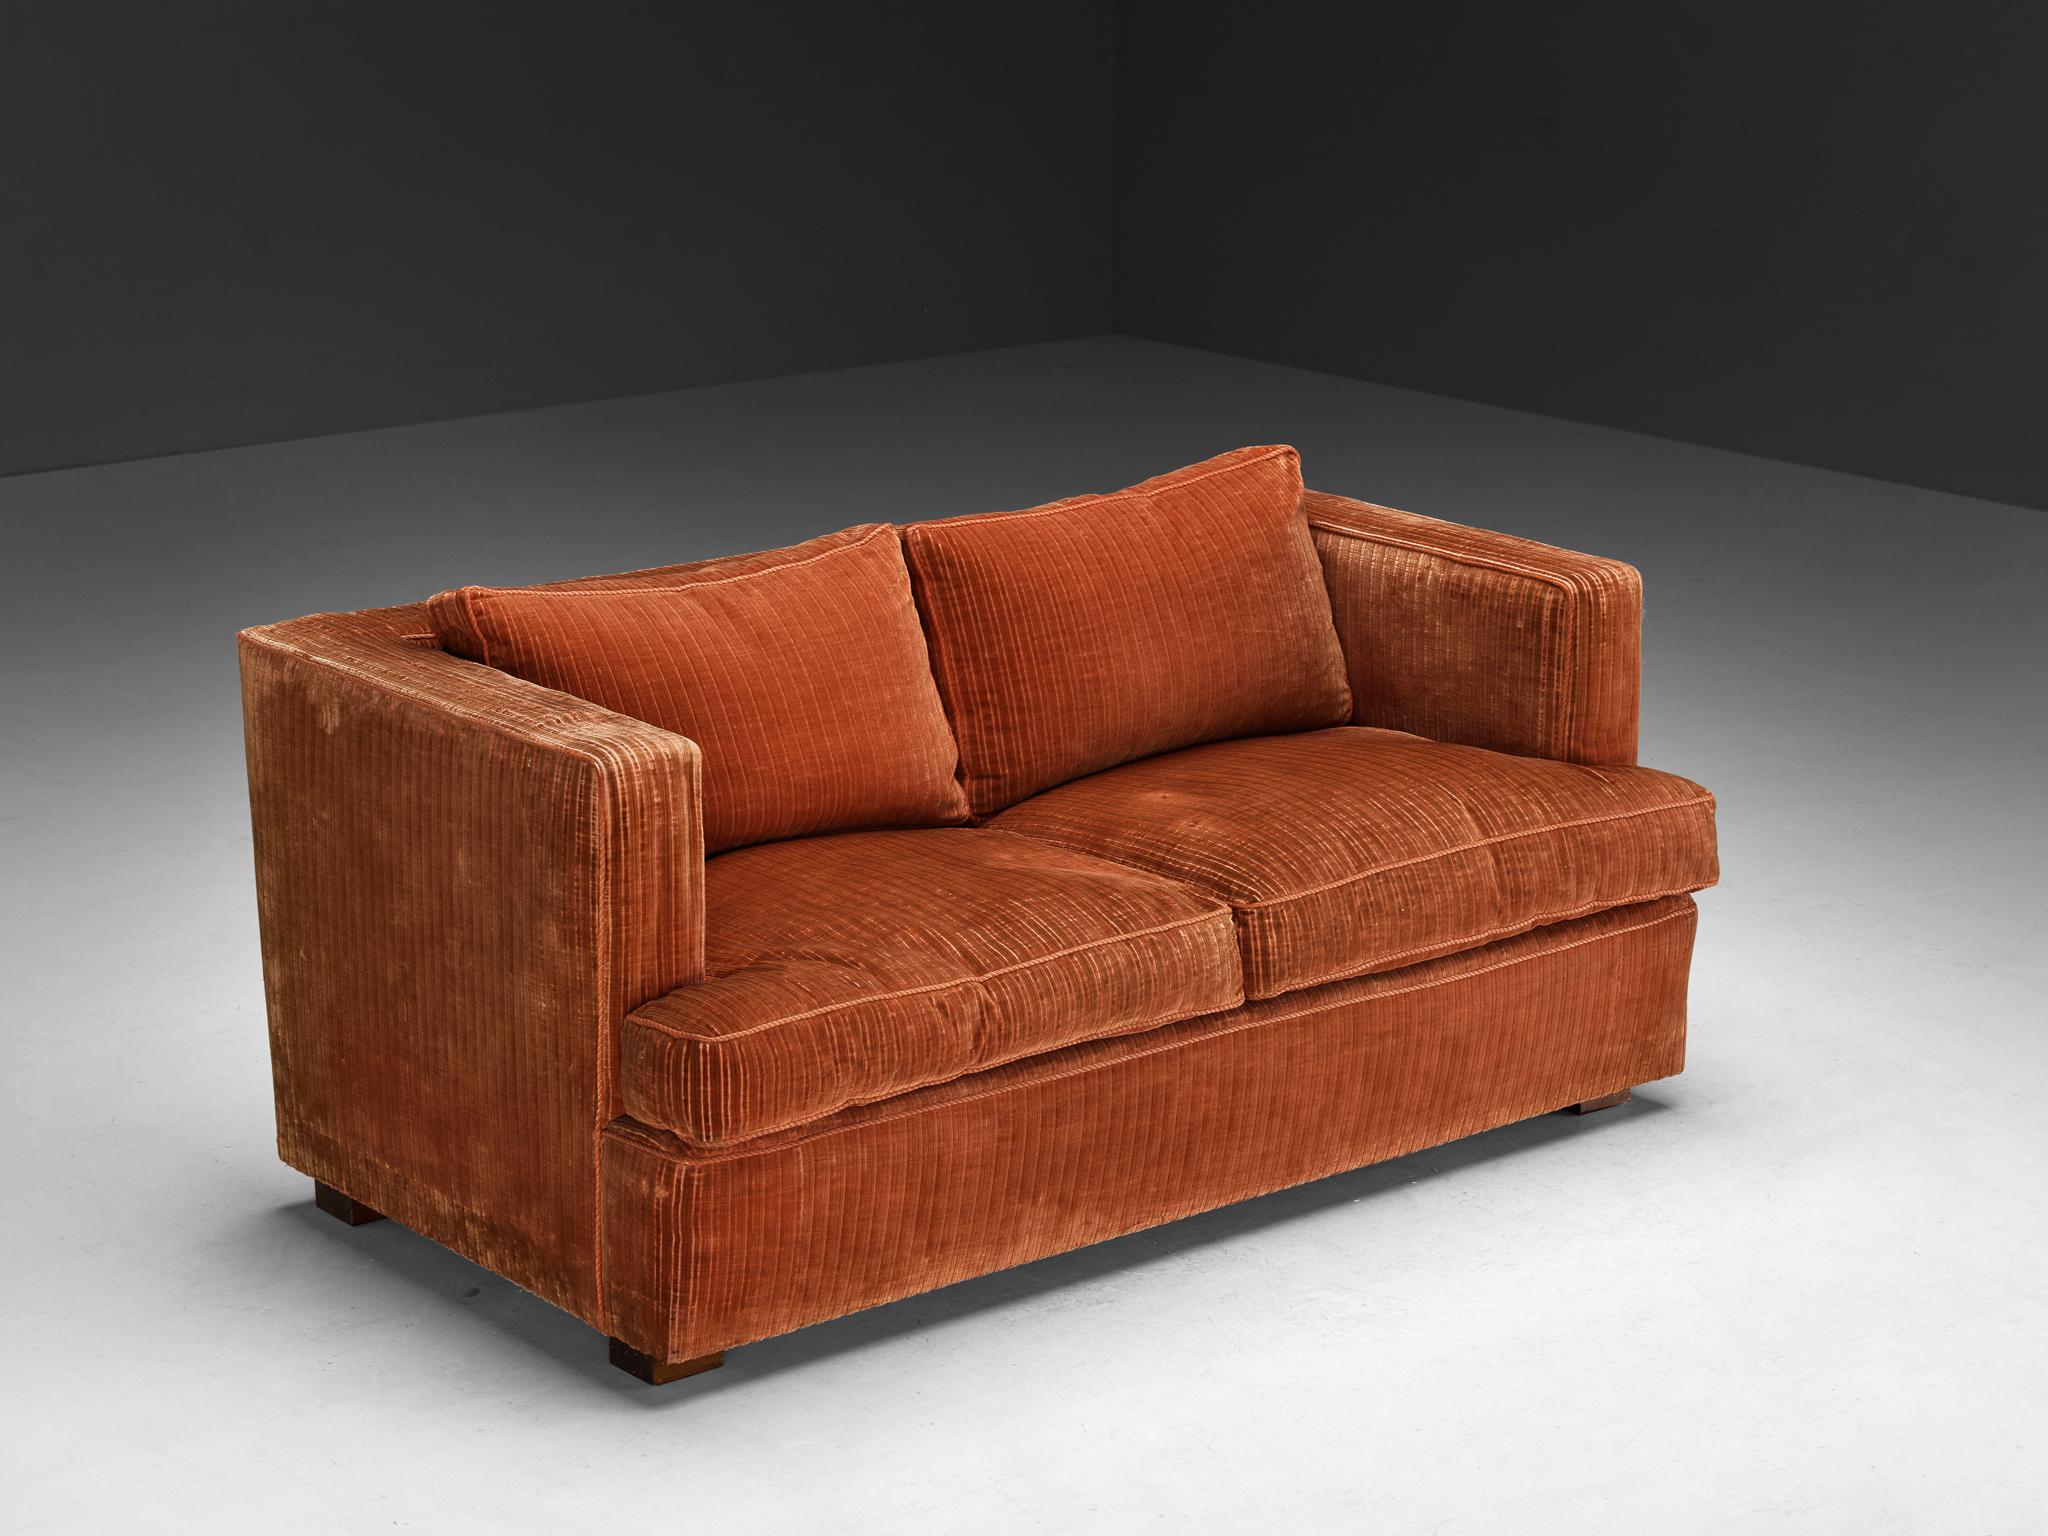 Sofa, Kordsamt, Holz, Italien, 1970er Jahre

Dieses zierliche Sofa hat eine gemütliche und voluminöse Ausstrahlung. Die Sitzmöbel sind mit einem dunkelorangen bis pfirsichfarbenen Samt bezogen. Die strukturierte Oberfläche des Stoffes, die aus